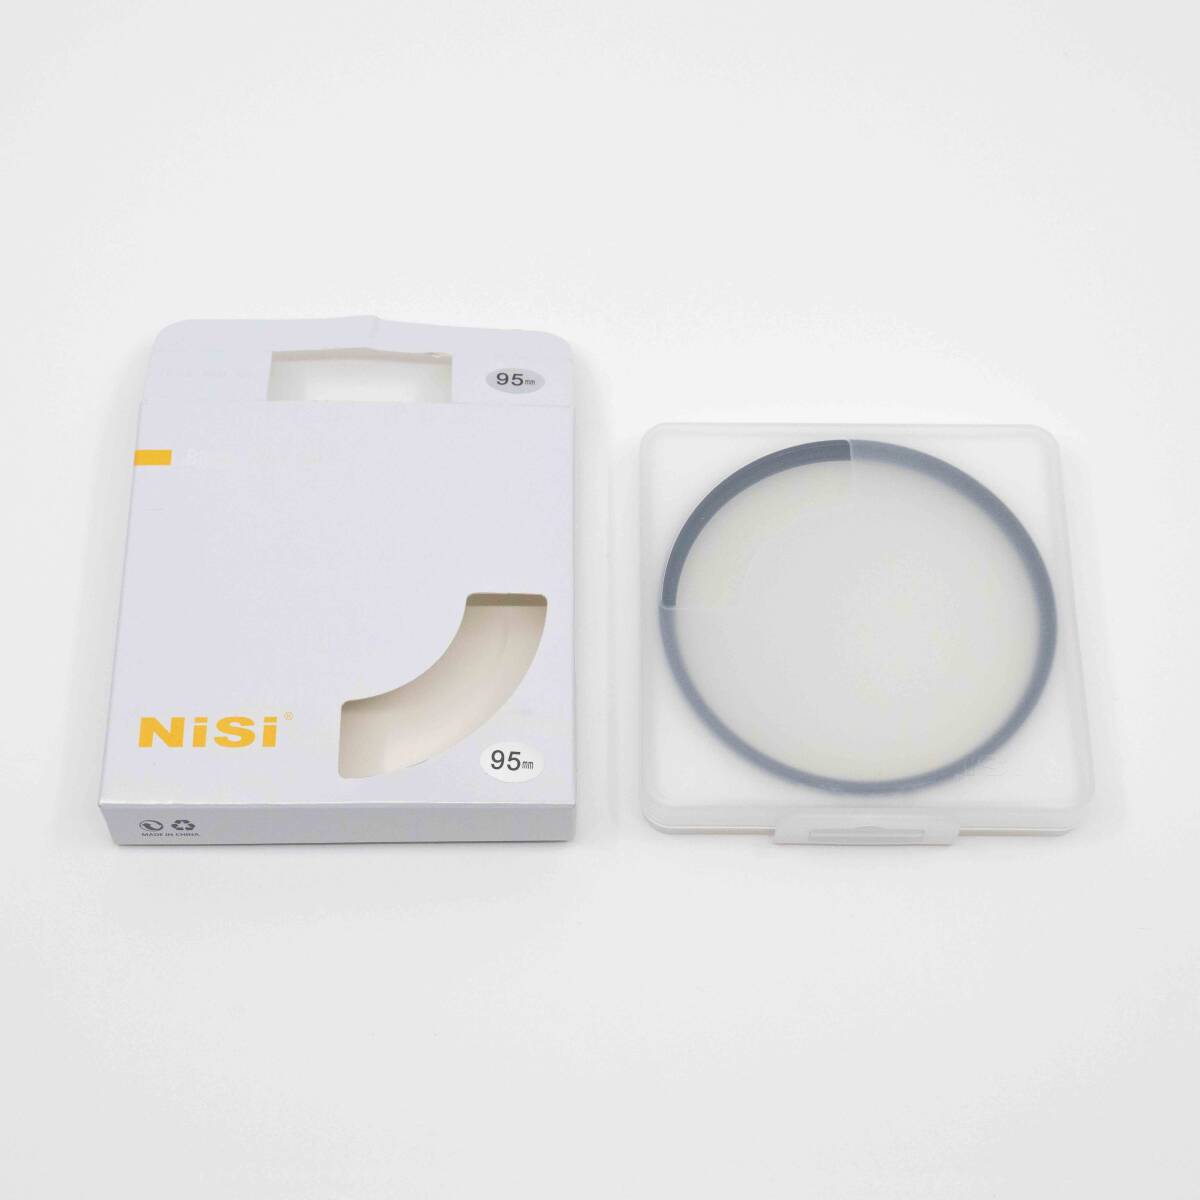 NiSi круглый фильтр черный Mist 1/4 95mm